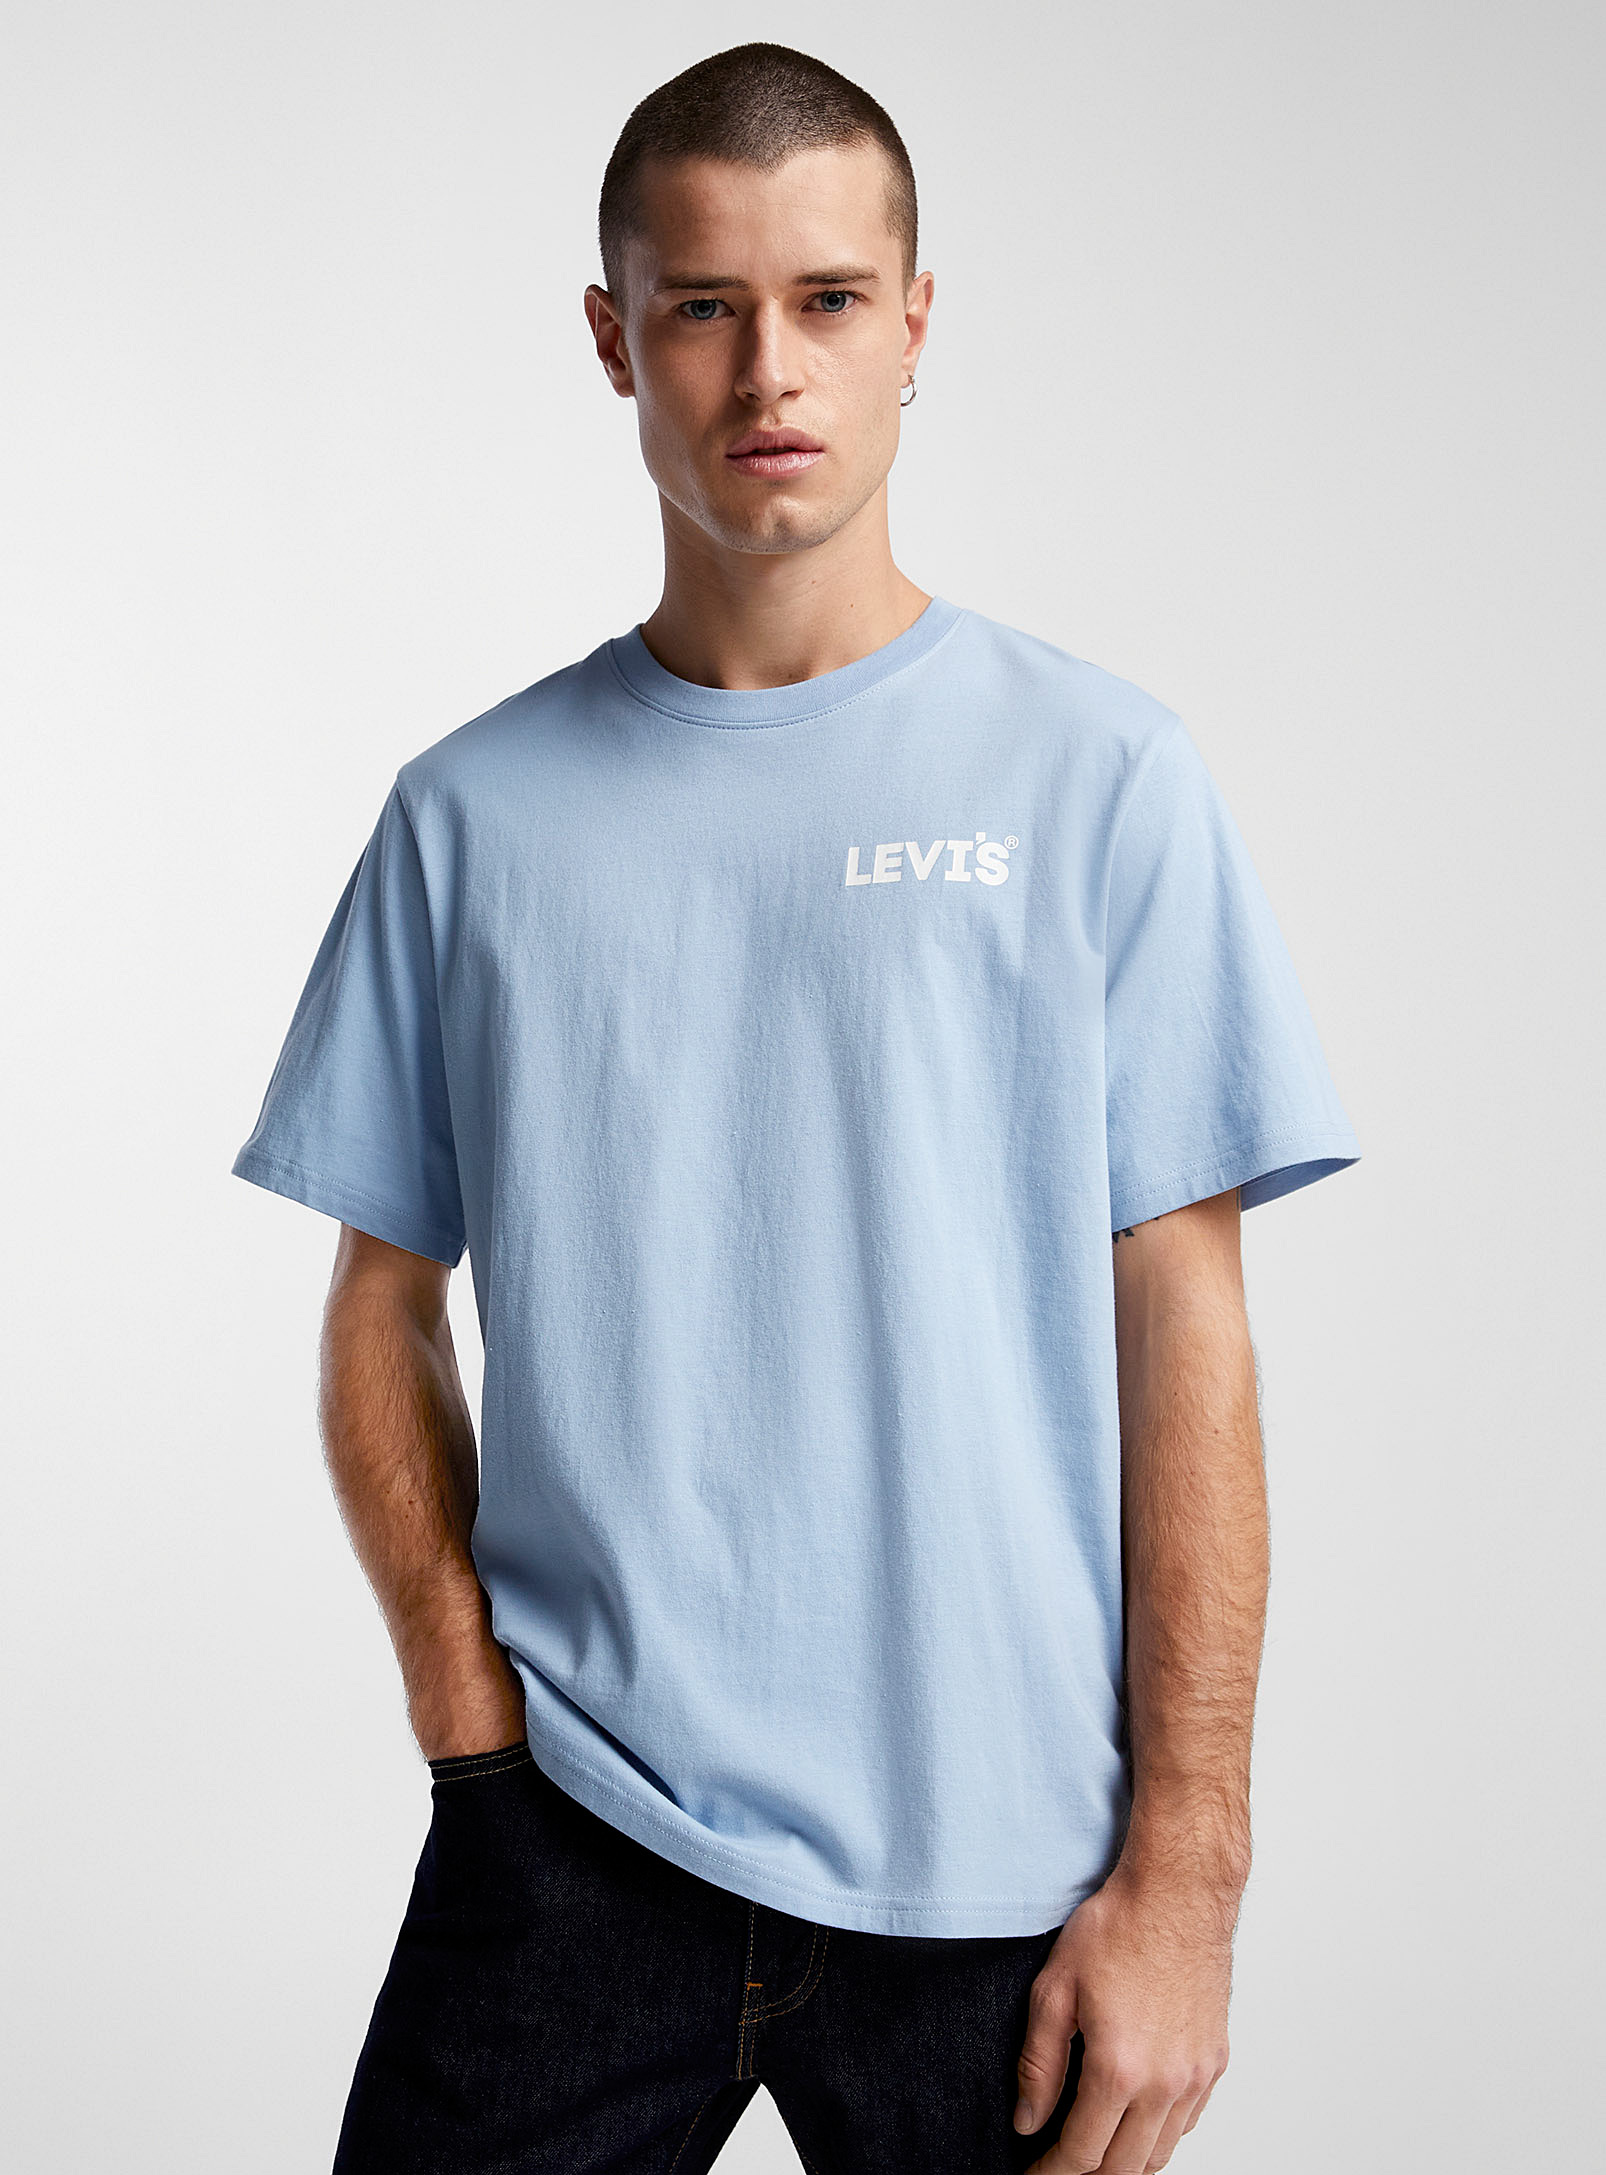 Levi's - Men's Repeat logo T-shirt